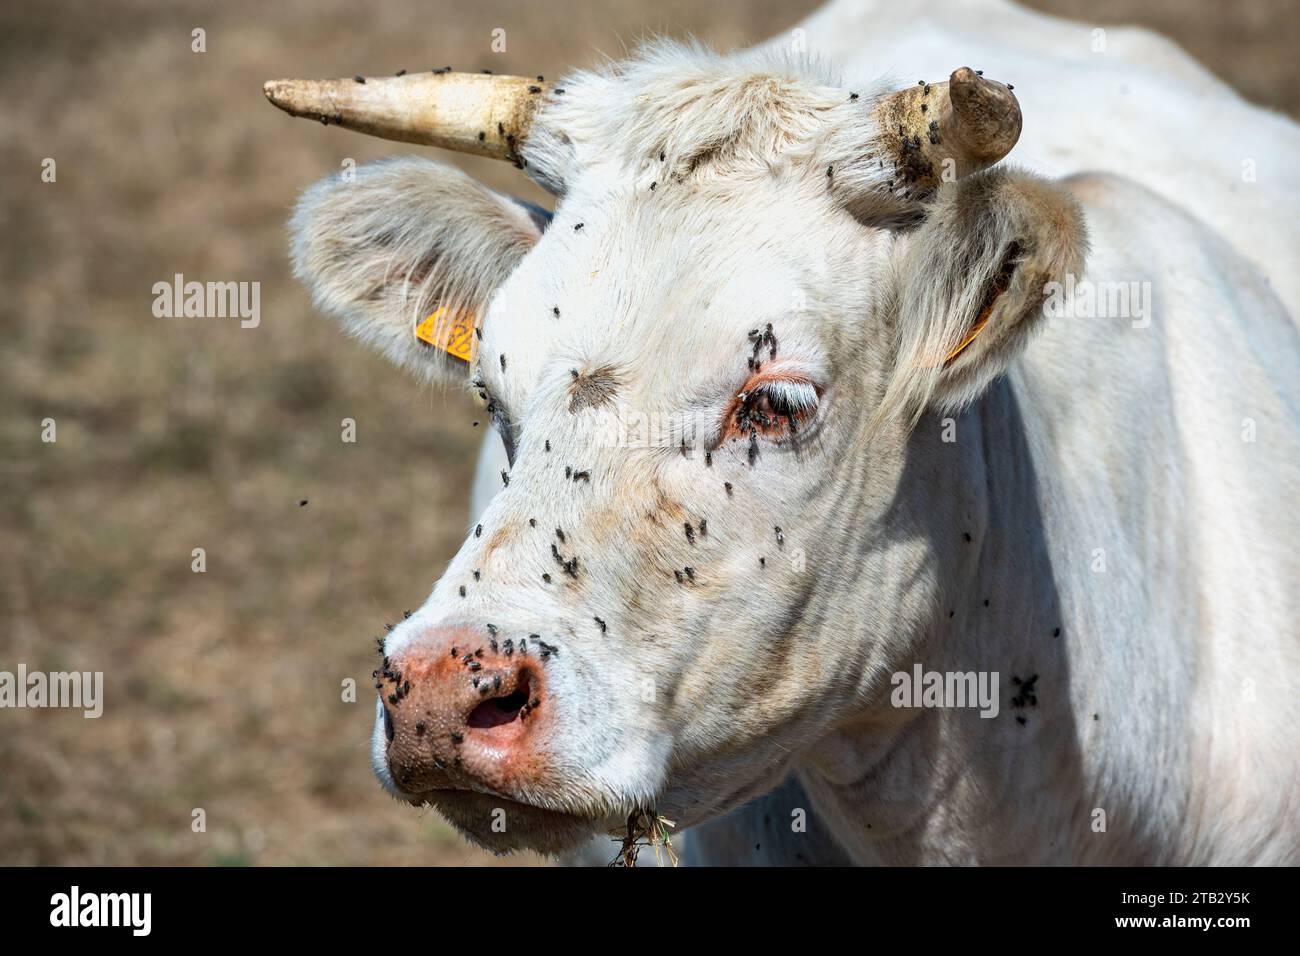 Vache dans un champ en été : tête de vache charolaise et yeux infestés de mouches. Les mouches peuvent être porteuses de maladies telles que la kératoconjonctivite infectieuse bovine (IBK Banque D'Images